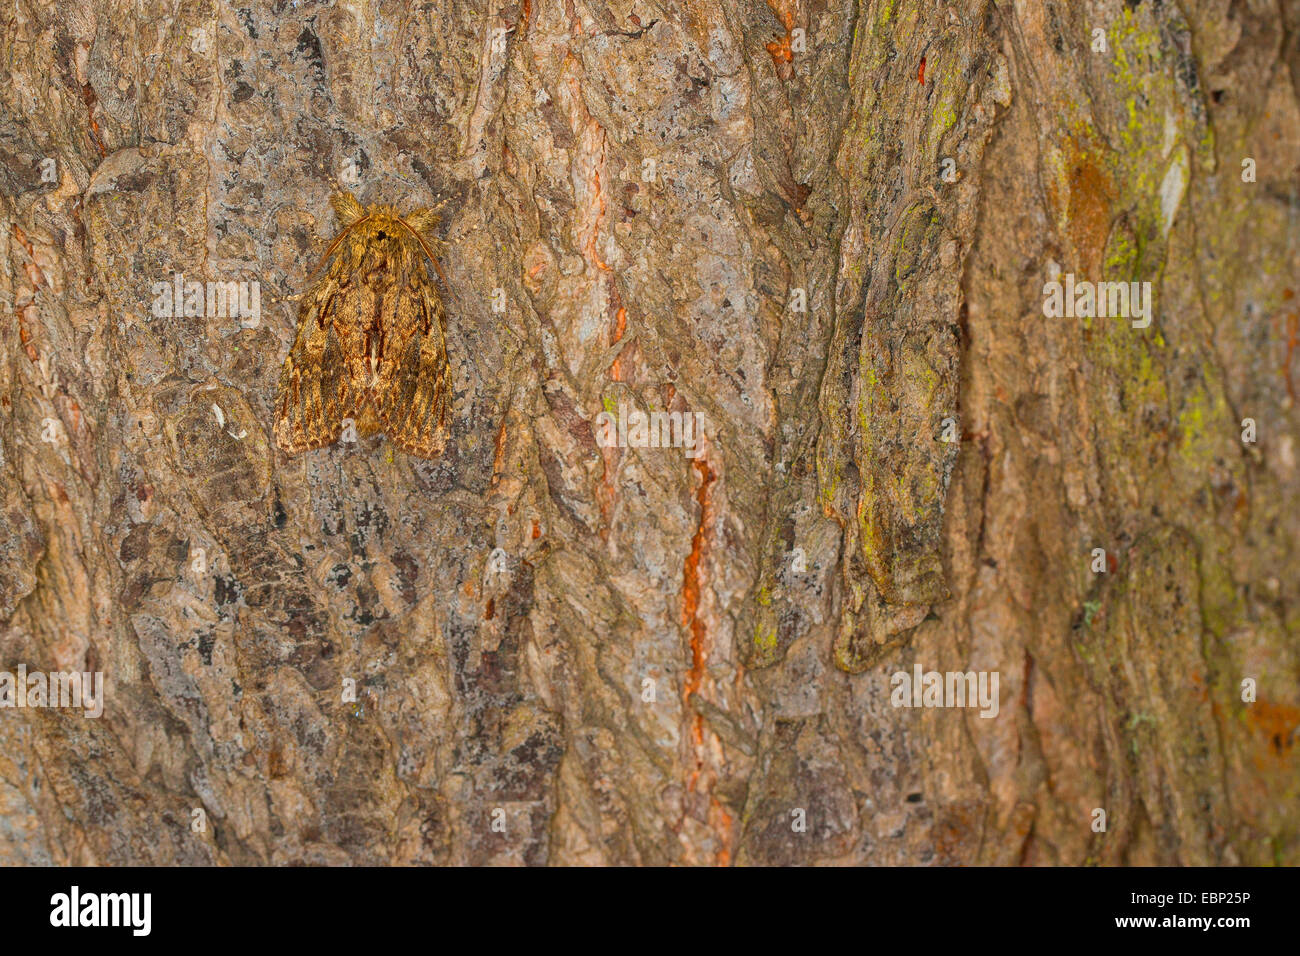 Great prominent (Peridea anceps, Notodonta anceps, Peridea trepida, Notodonta trepida), well camouflaged on bark, Germany Stock Photo